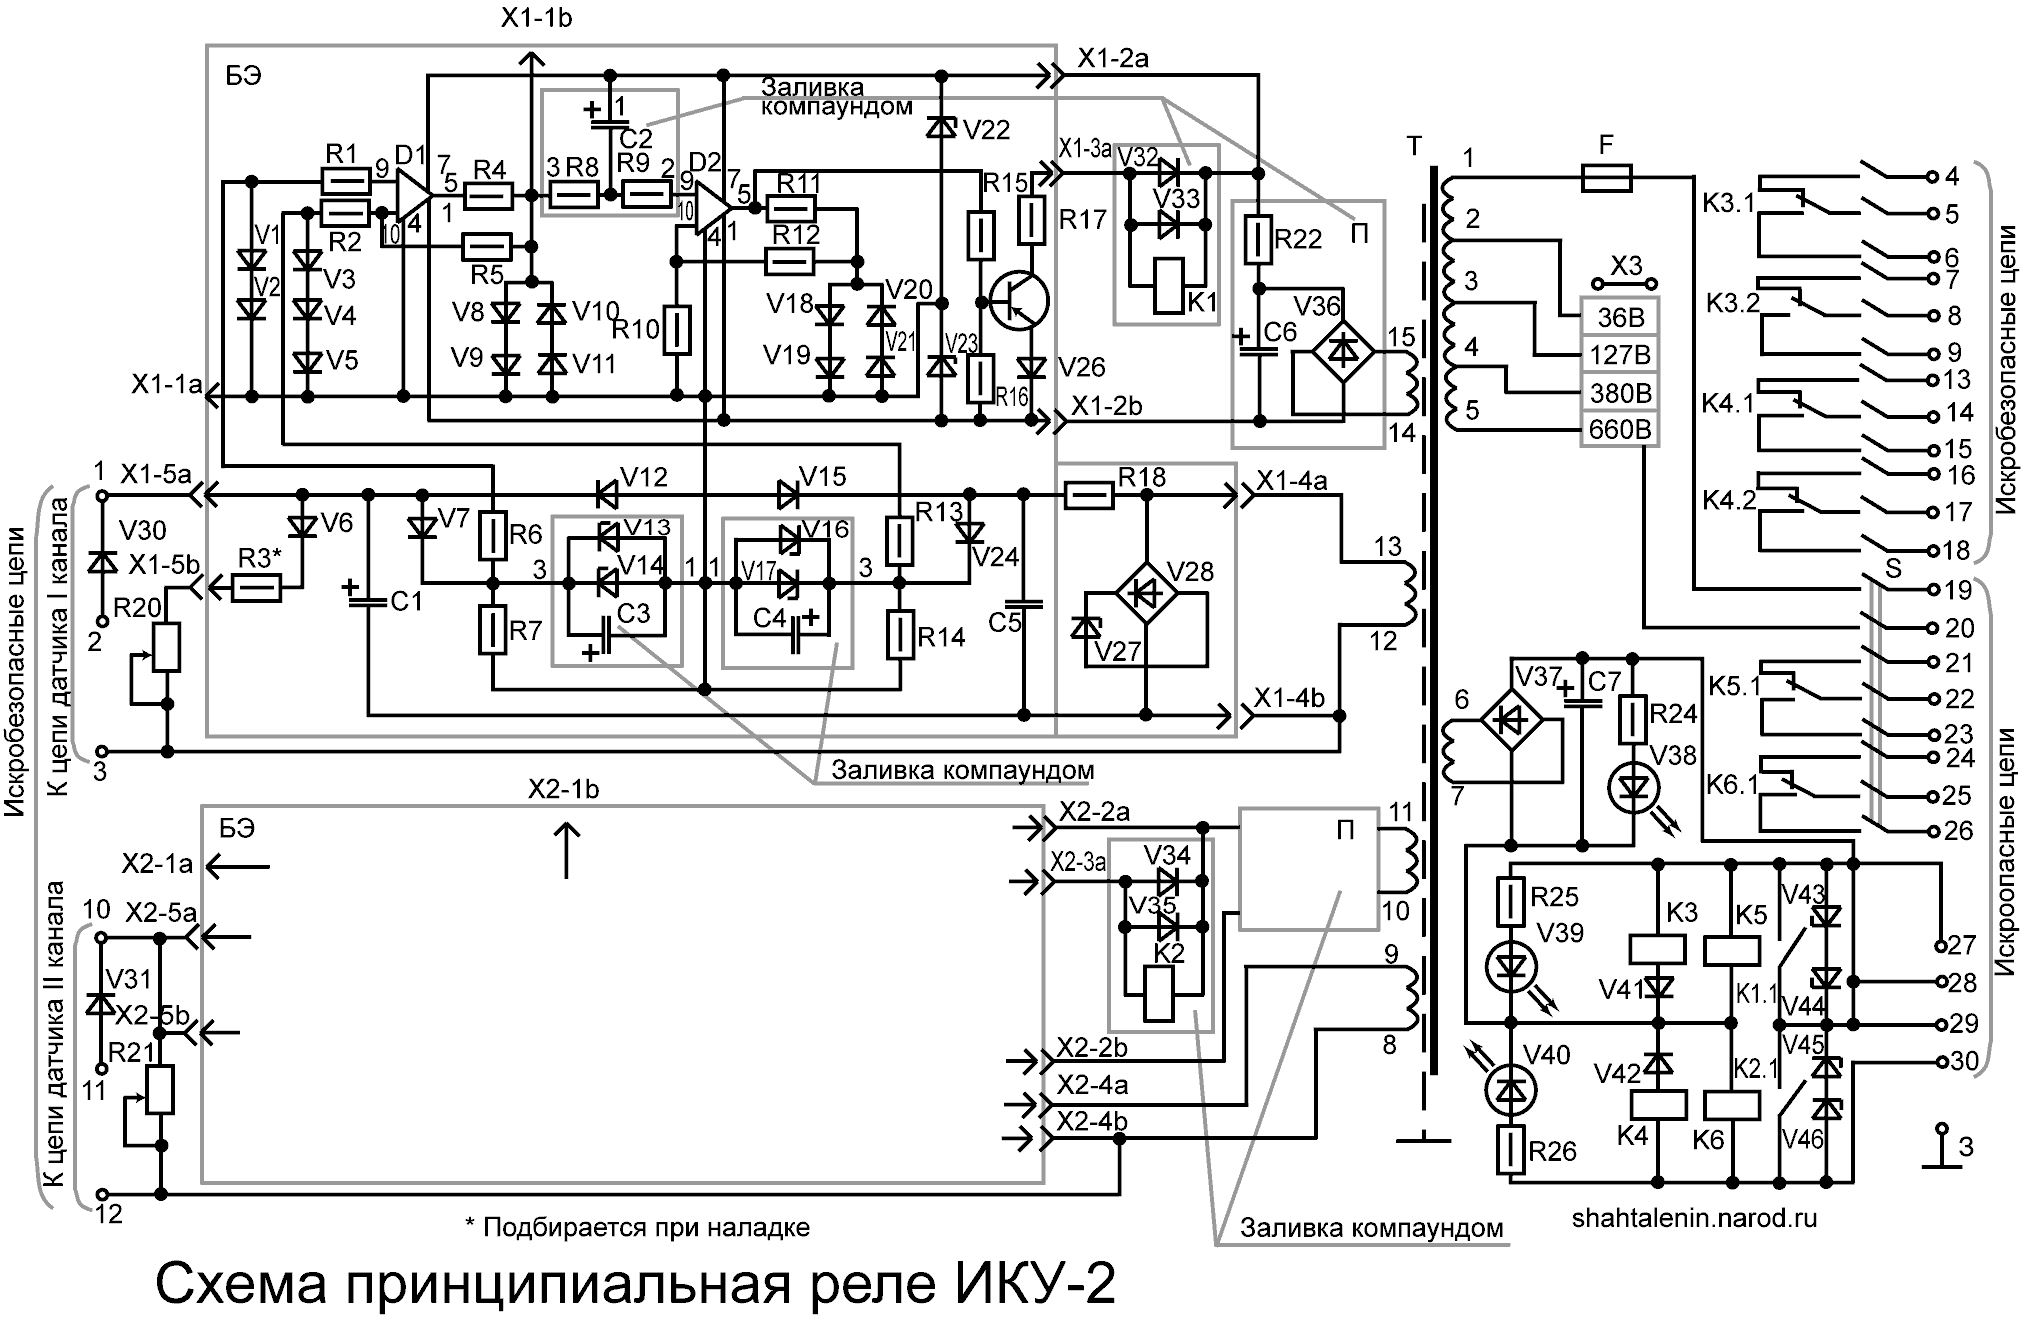 Схема электрическая принципиальная ИКУ-2